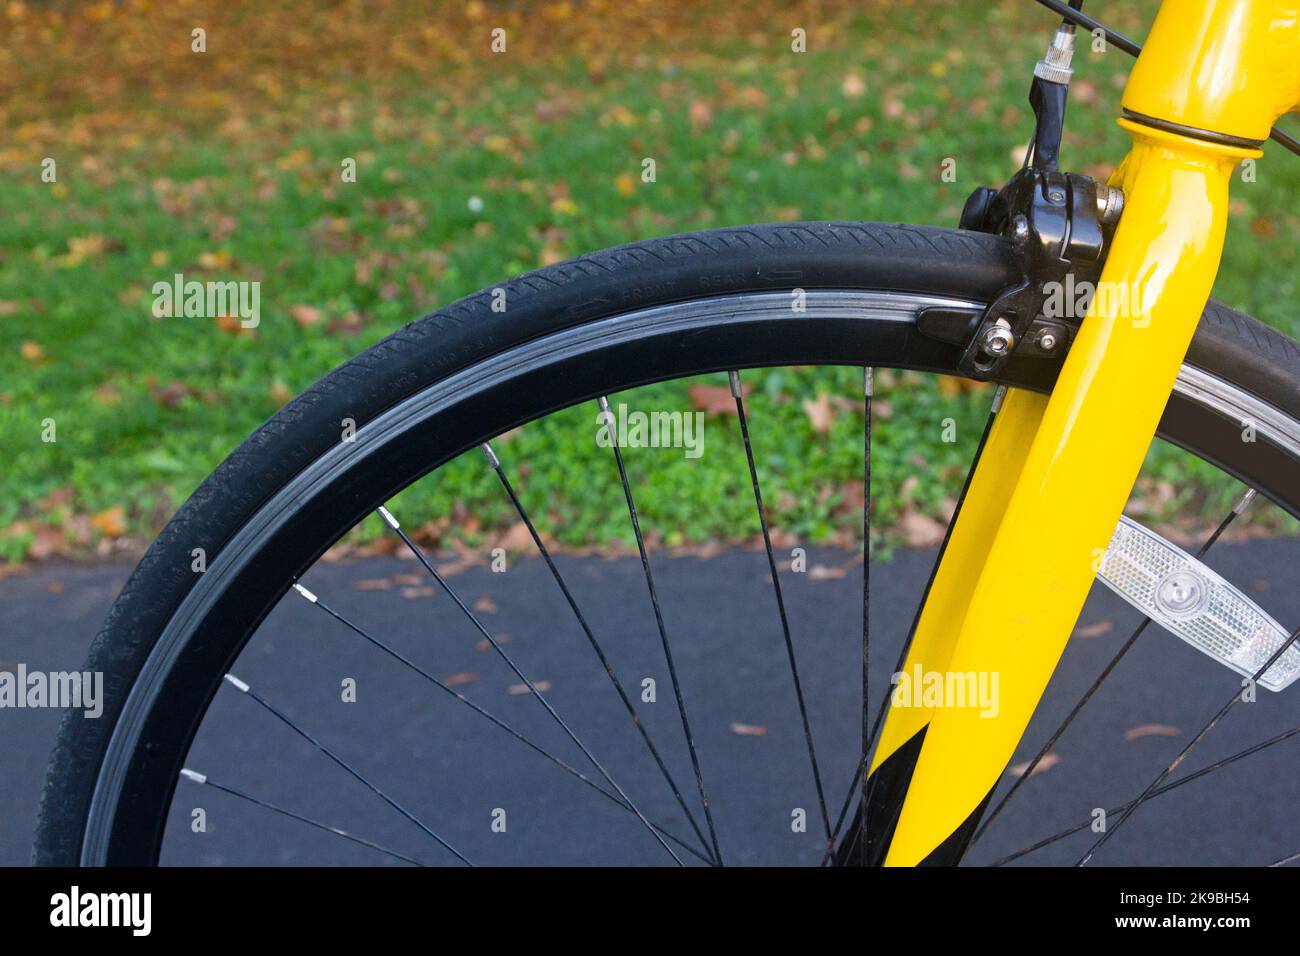 Une roue de vélo et une fourche jaune avec un fond vert Banque D'Images